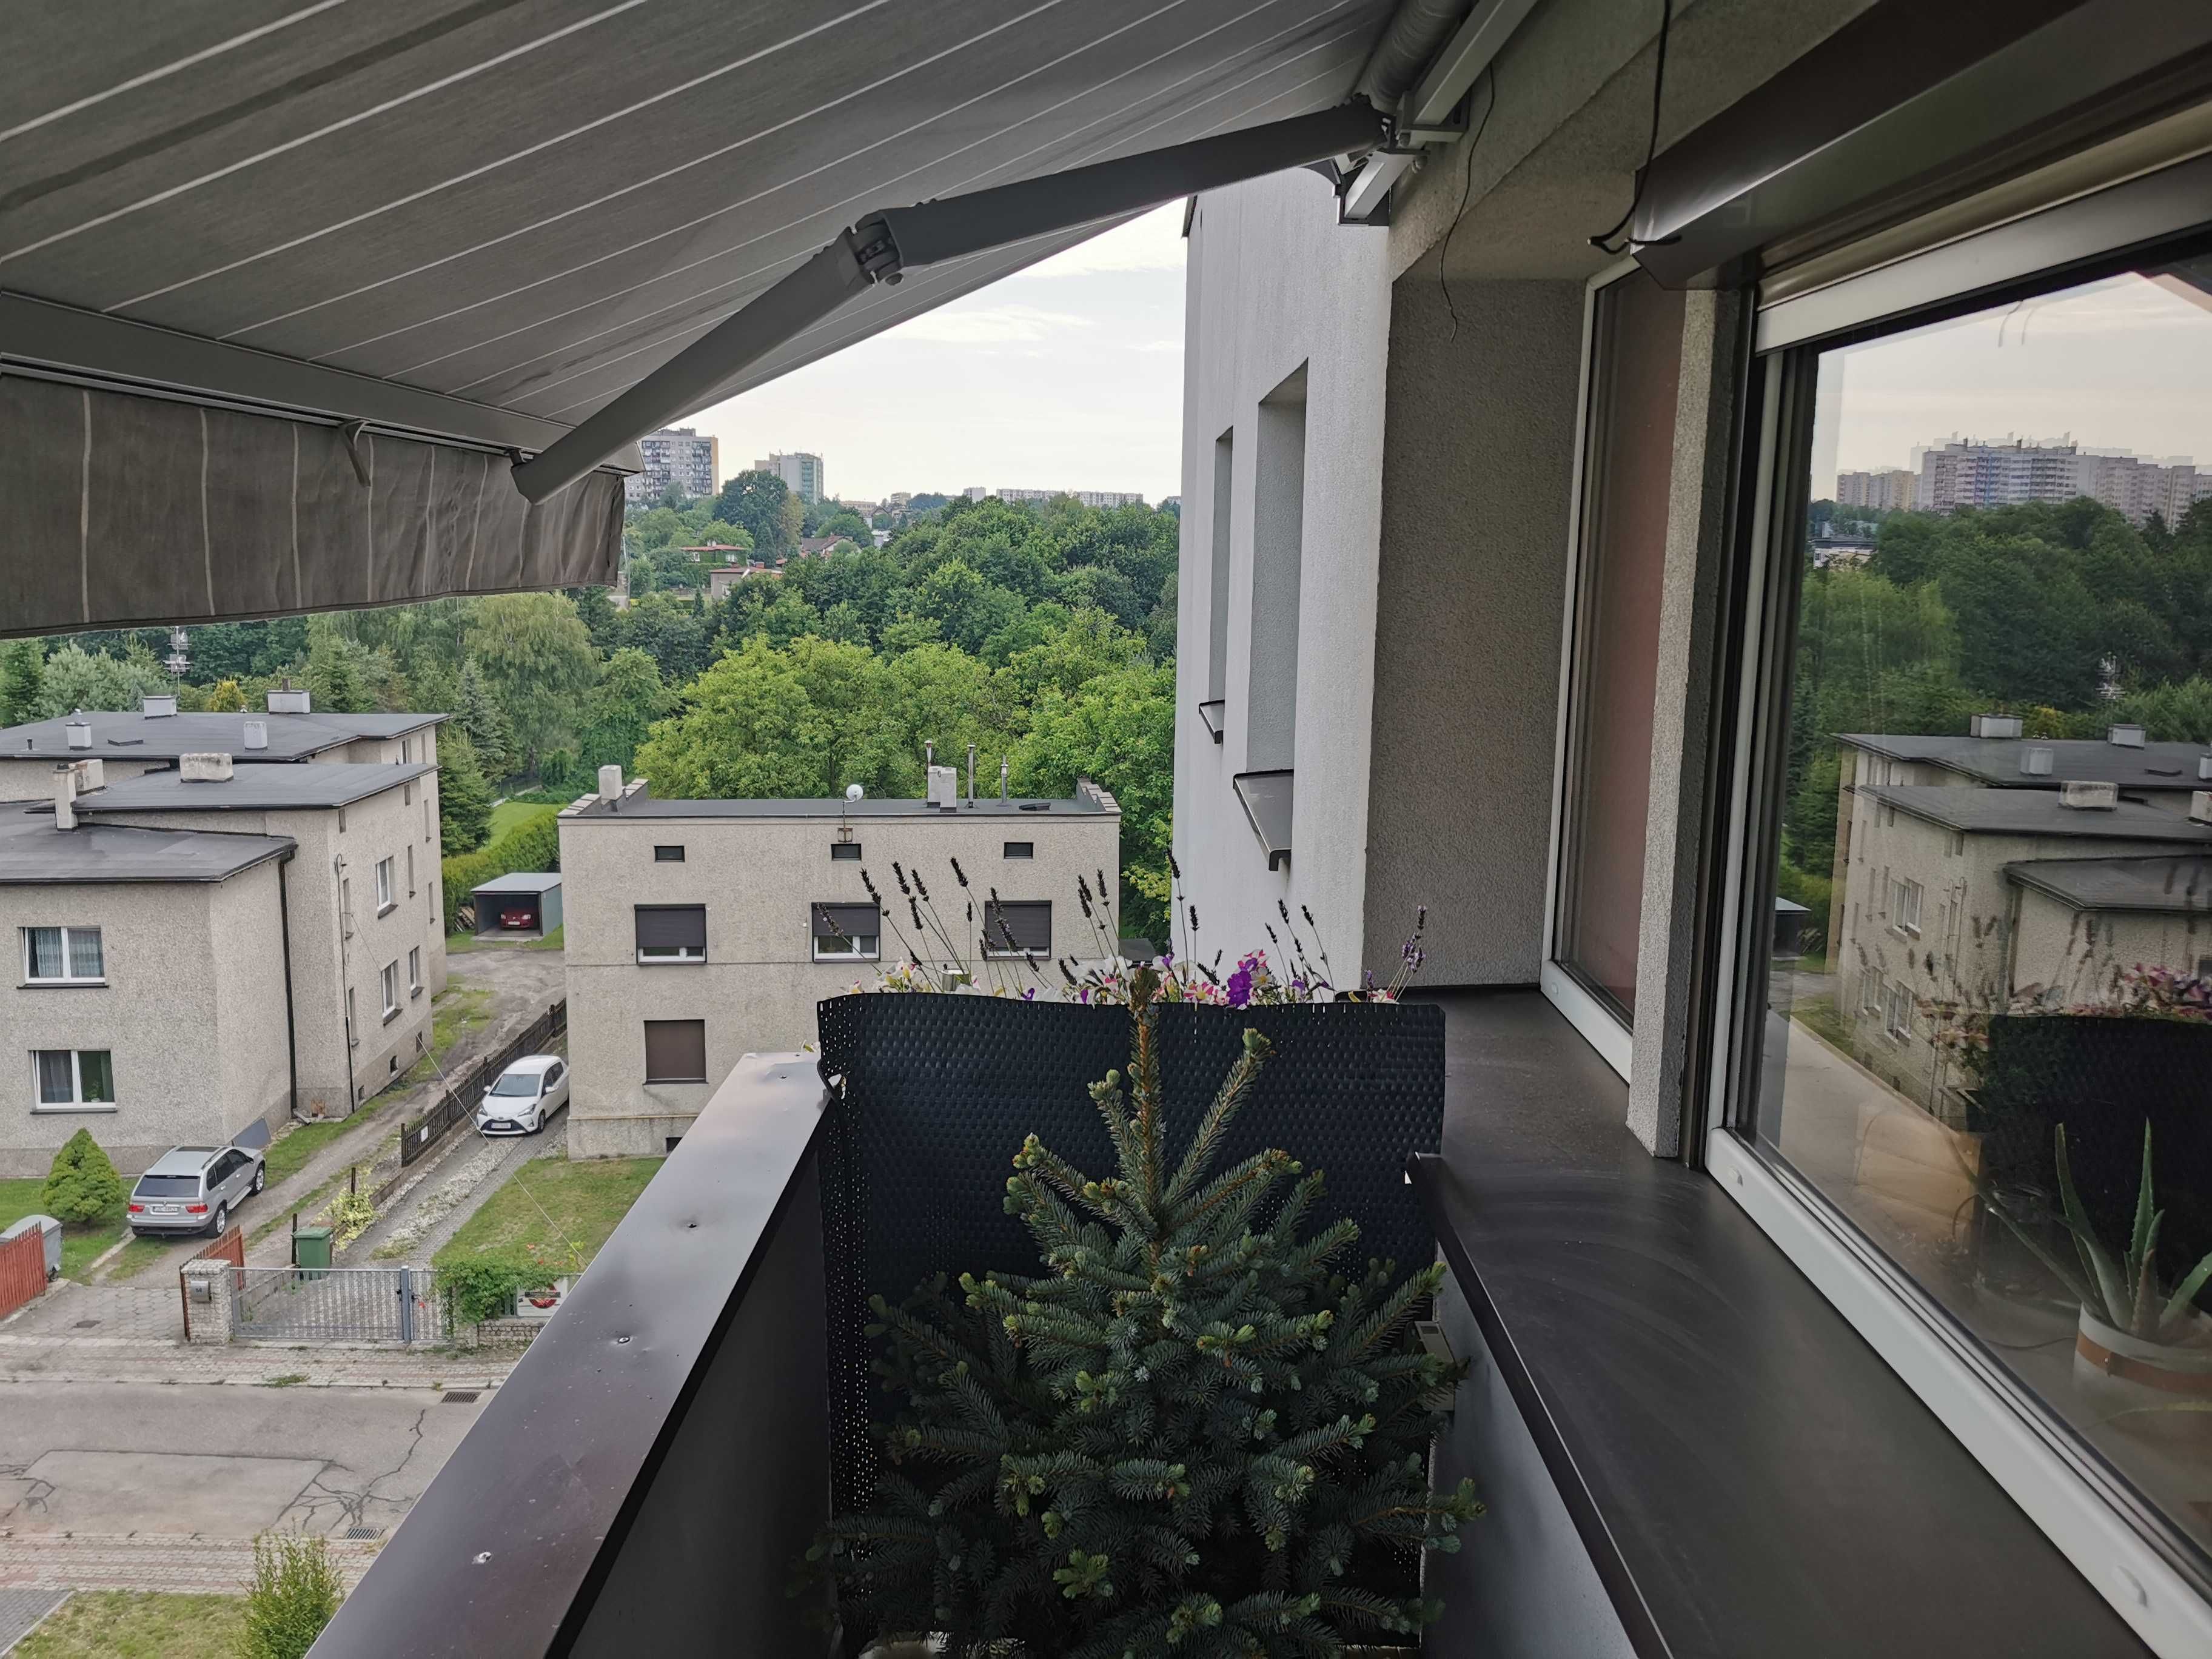 Markiza Selt  tarasowa balkonowa